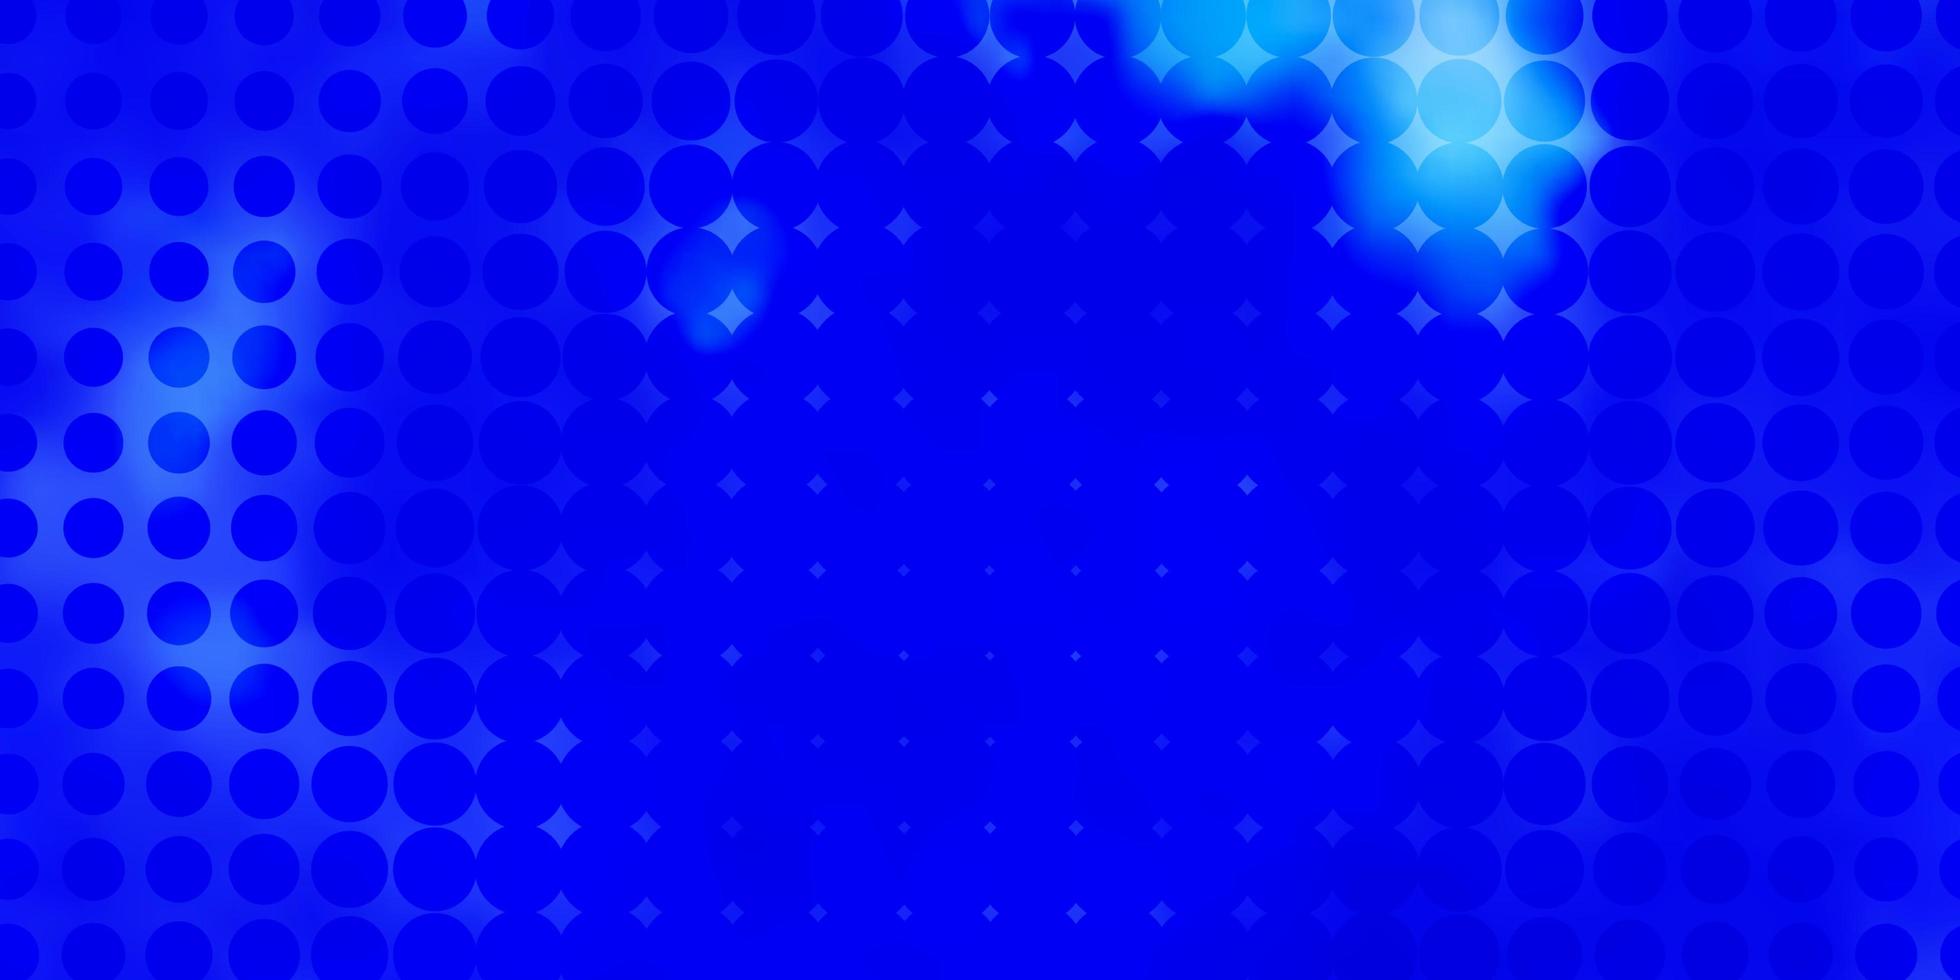 sfondo vettoriale azzurro con cerchi illustrazione astratta con macchie colorate nel modello di stile della natura per le pagine di destinazione dei siti web